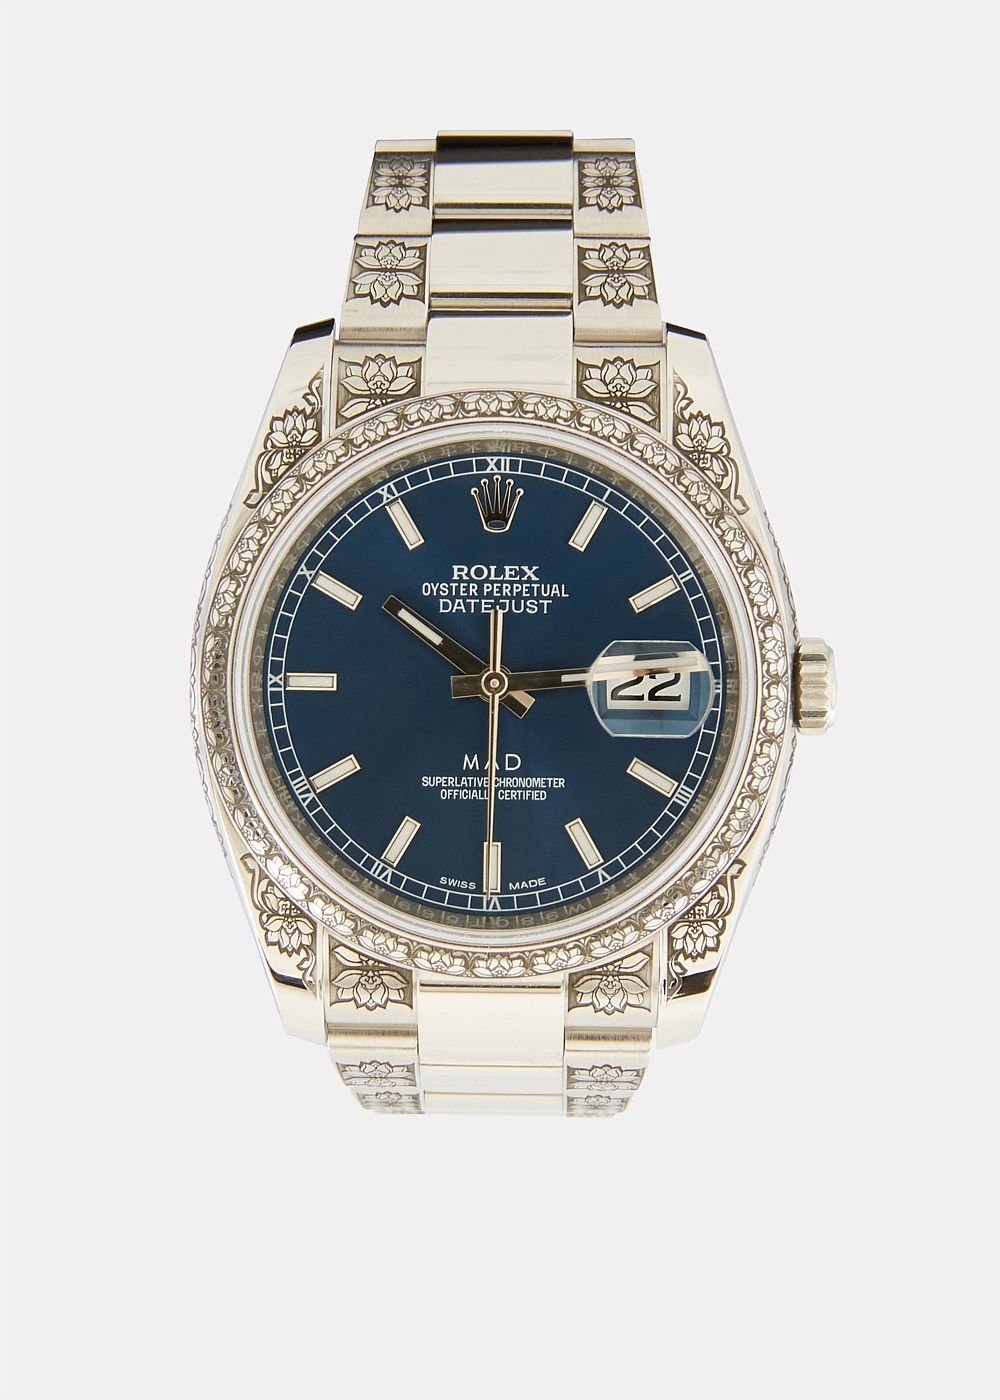 $3000 rolex watch